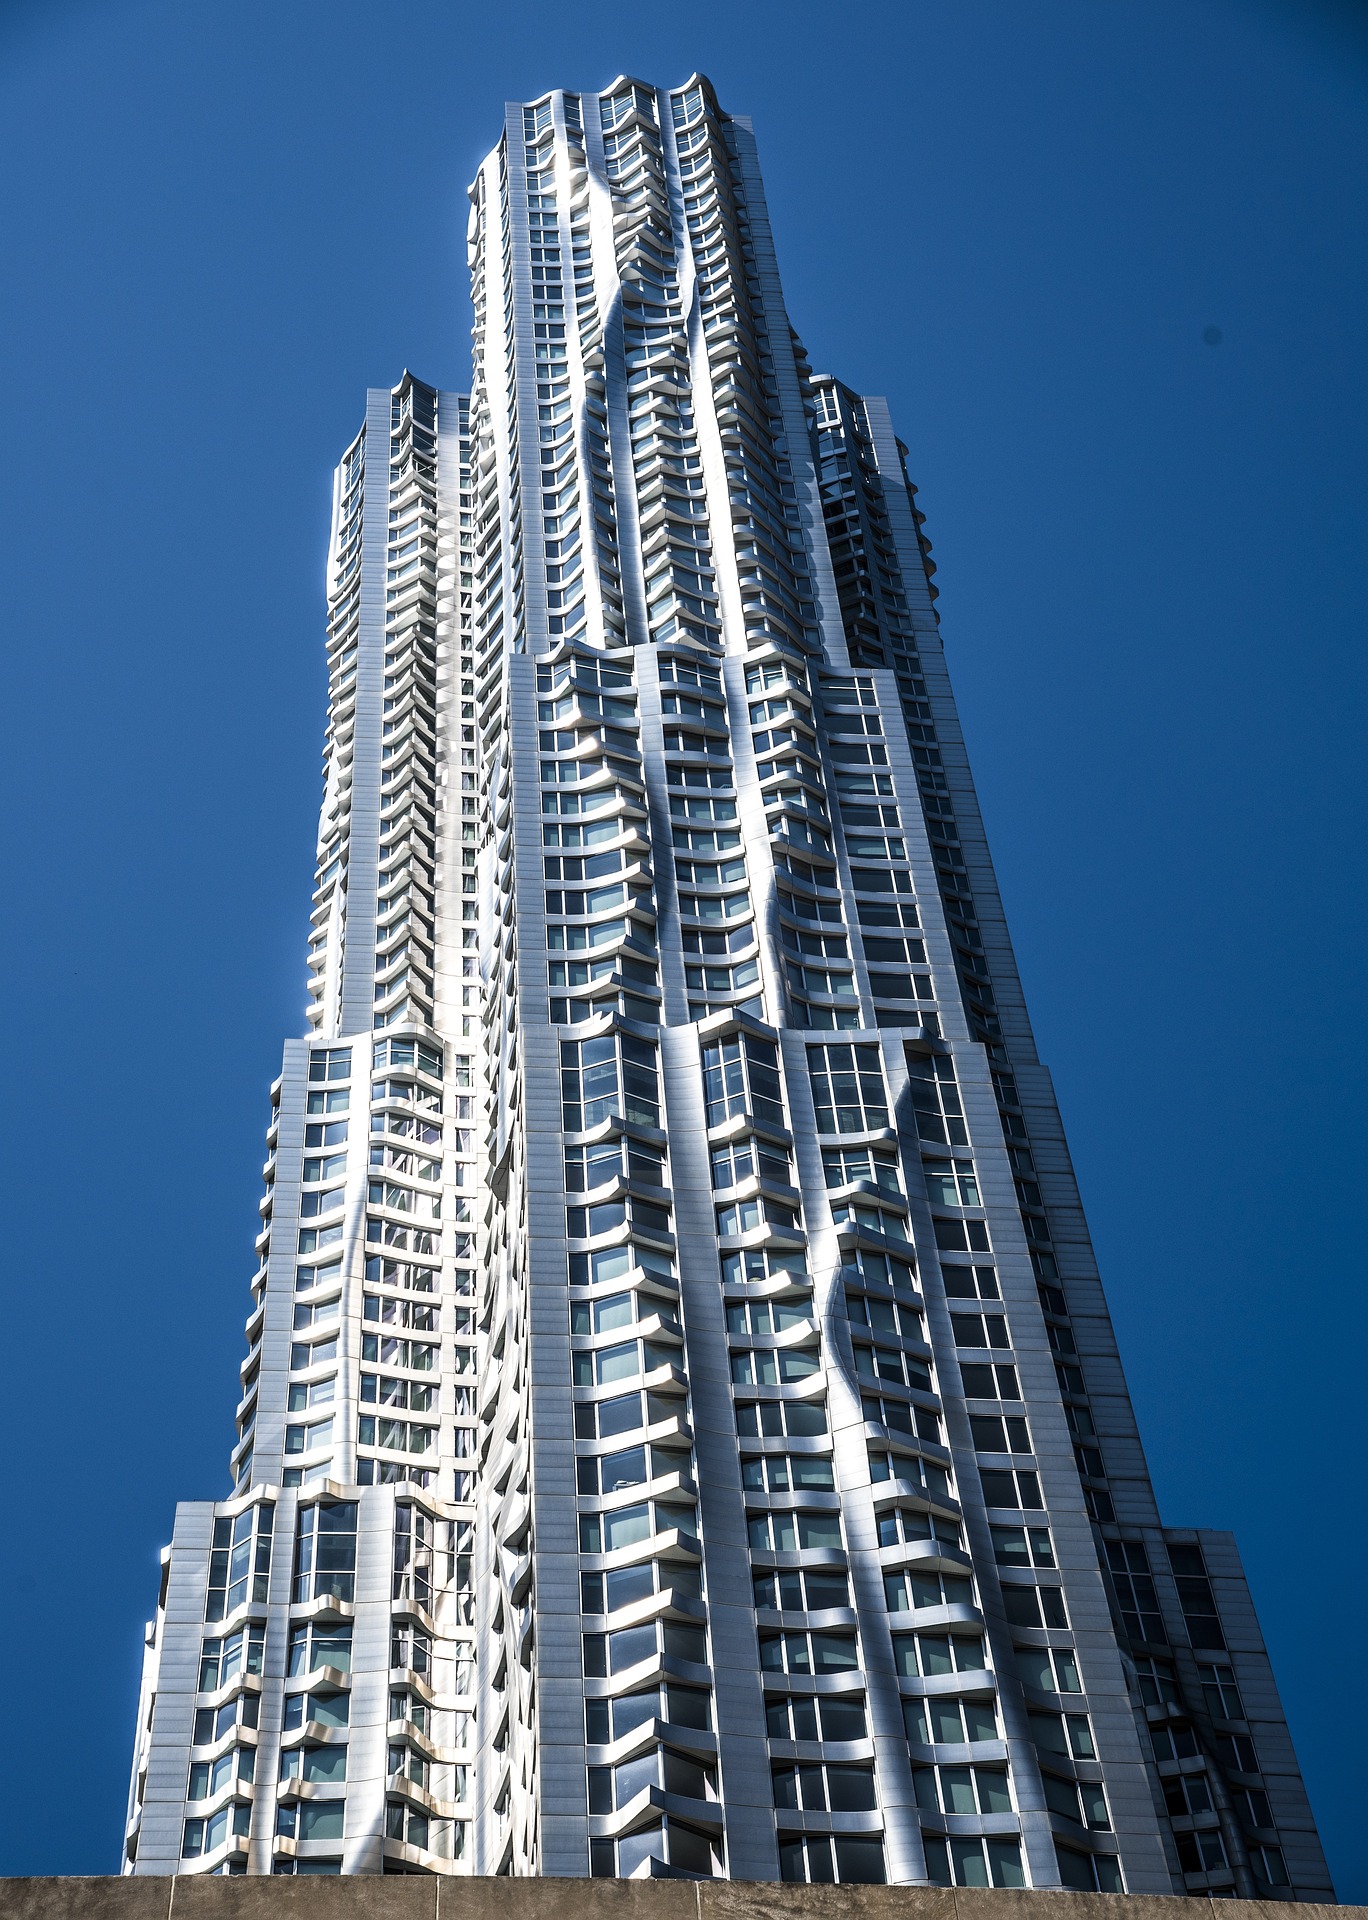 Gratte-ciel avec une différence : 8 Epicéa Street (New York), conçu par Frank Frank O. Ginger dans le style de la déstructuration.